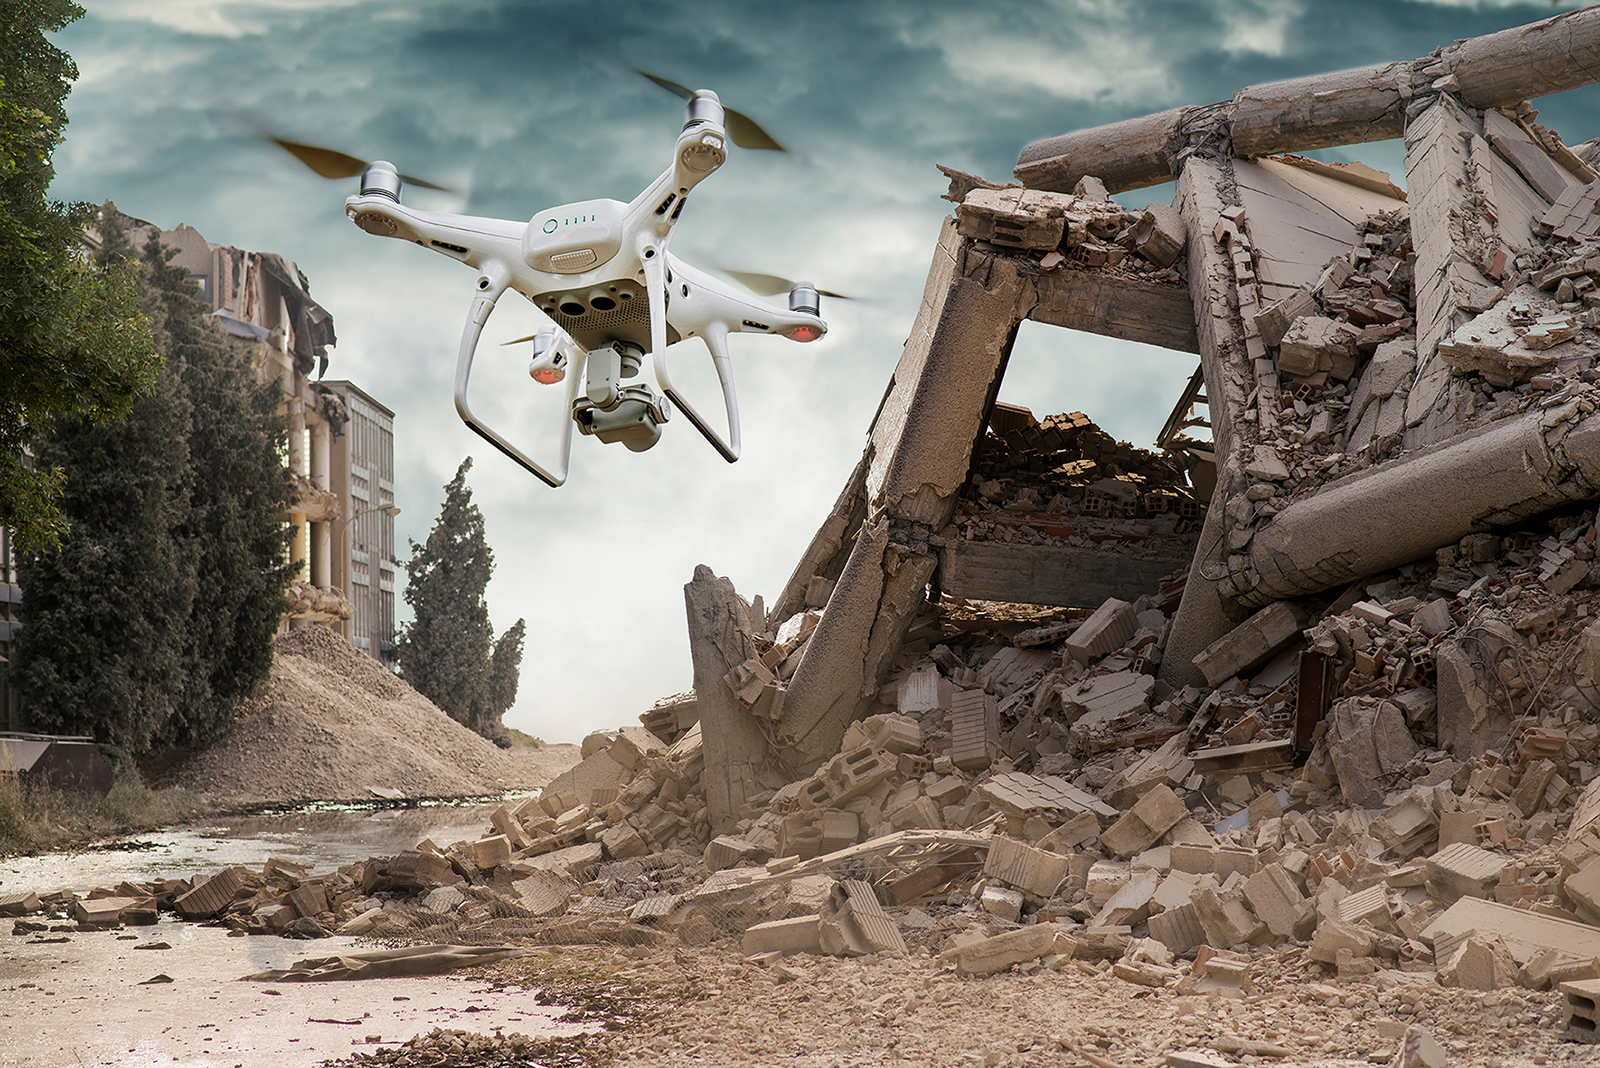 Nach Katastrophen werden zunehmend Drohnen eingesetzt, um schnell große Gebiete mit zerstörter Infrastruktur zu überfliegen, Hilfesuchende zu orten und die Reaktionsfähigkeit der Rettungsteams zu beschleunigen.